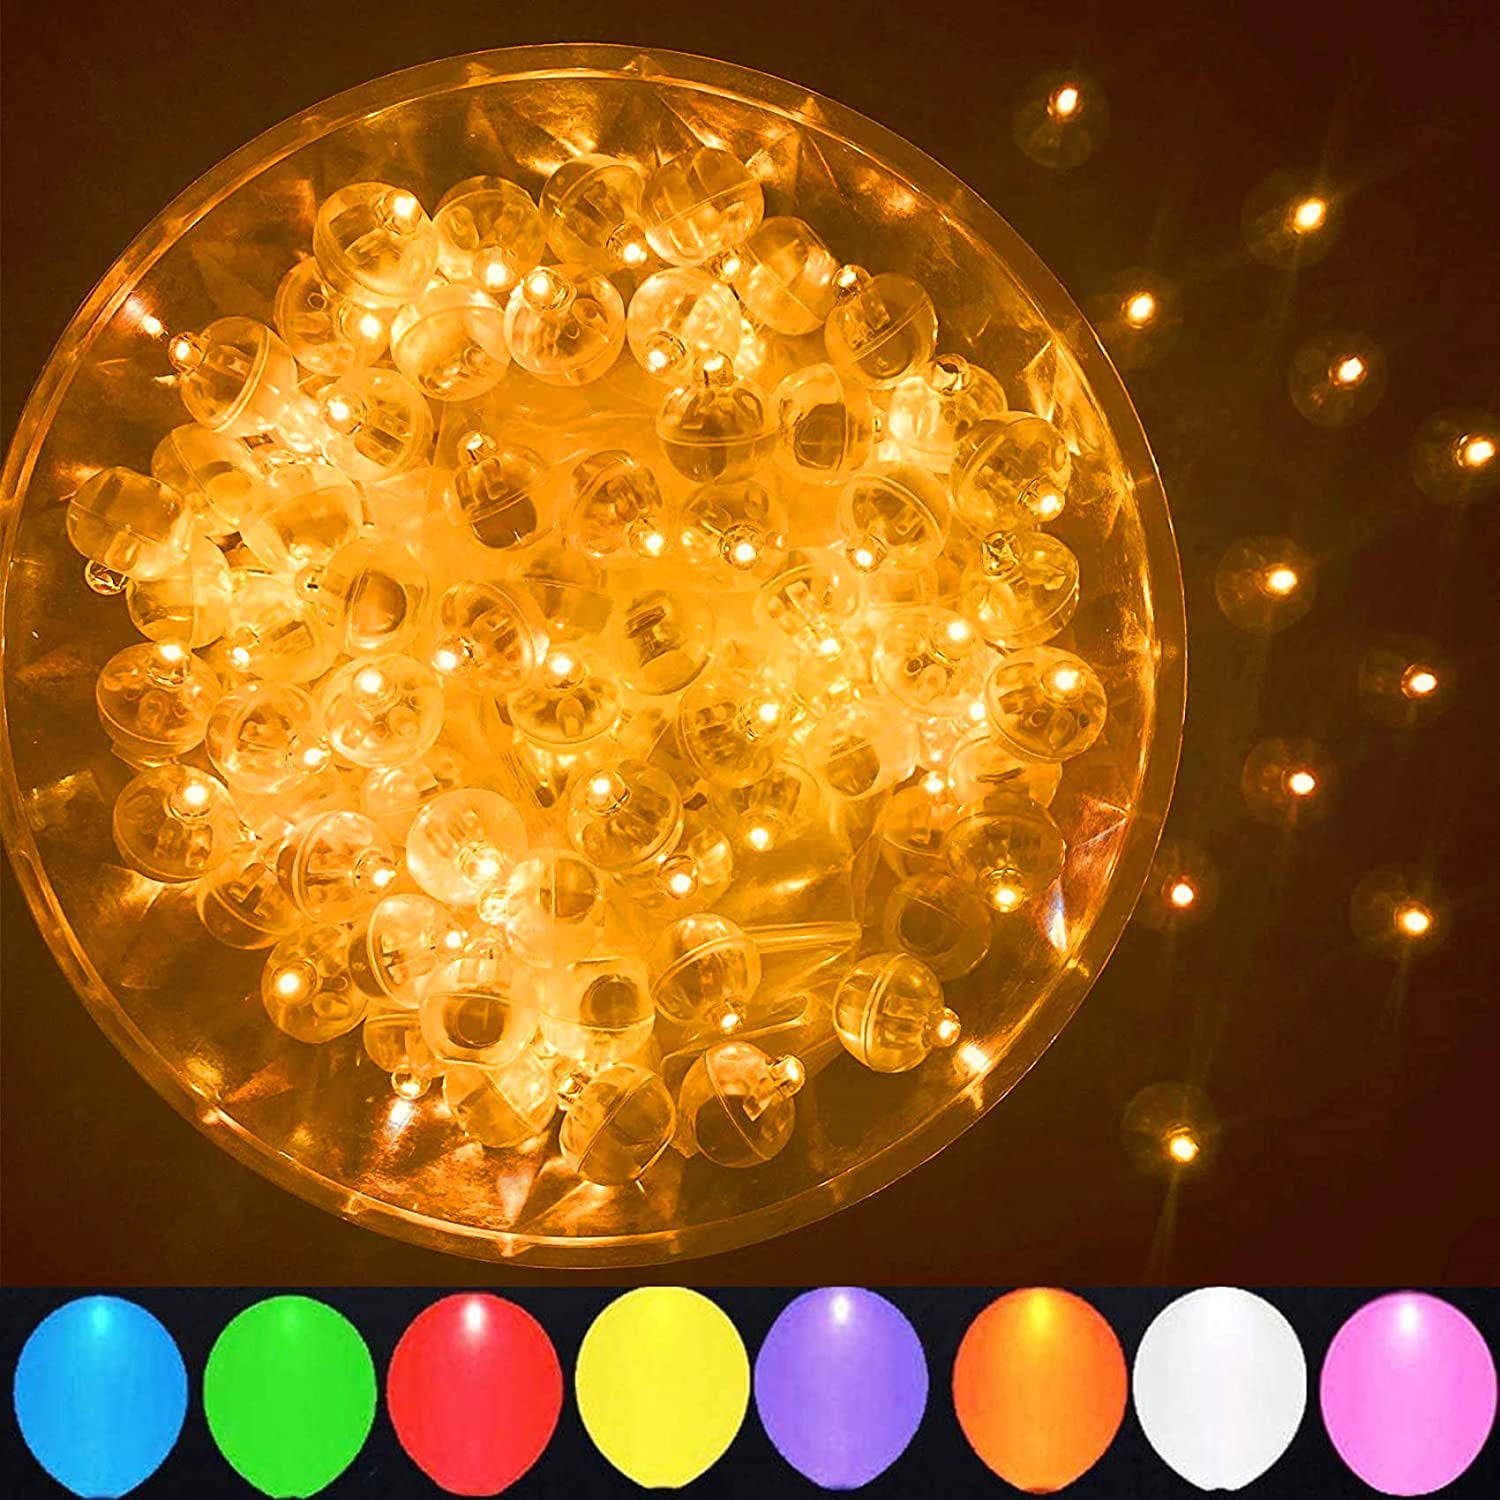 100pcs Multicolor LED Balloon Lights Round Mini Tiny Flash Led Light Colorful 